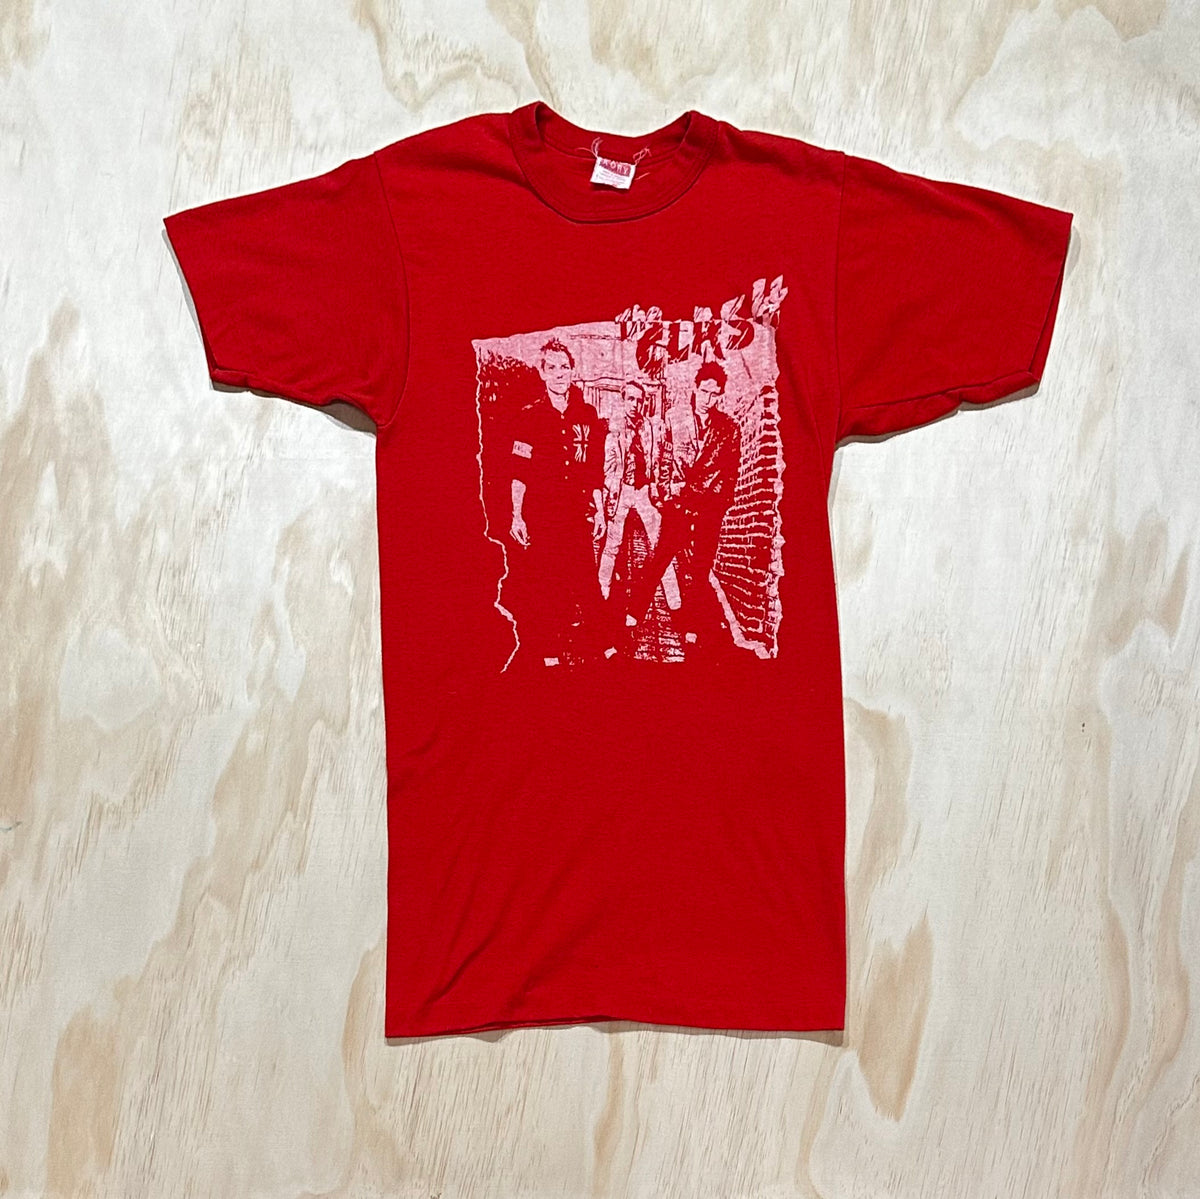 Vintage Original The Clash Graphic T shirt Women’s